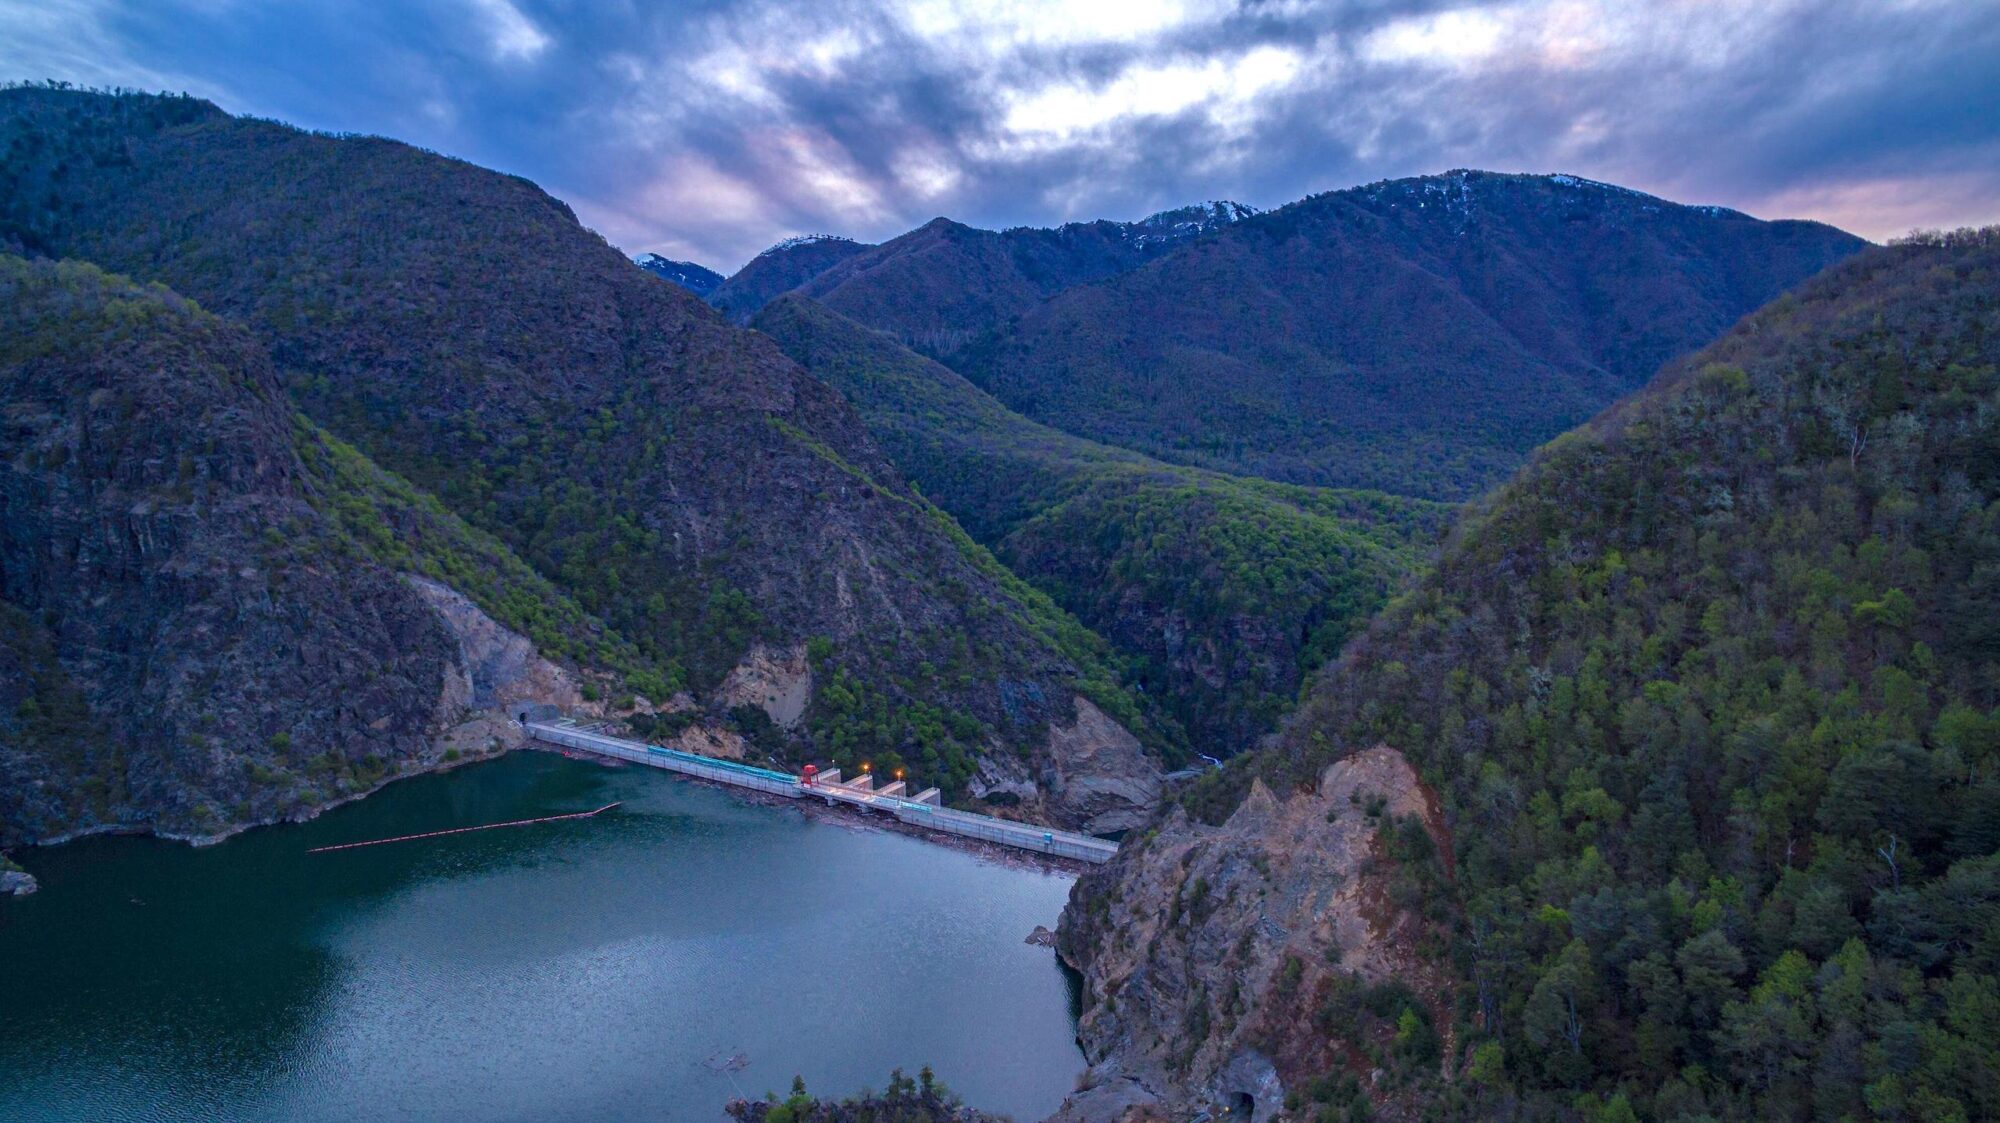 Ralco Dam in Chile